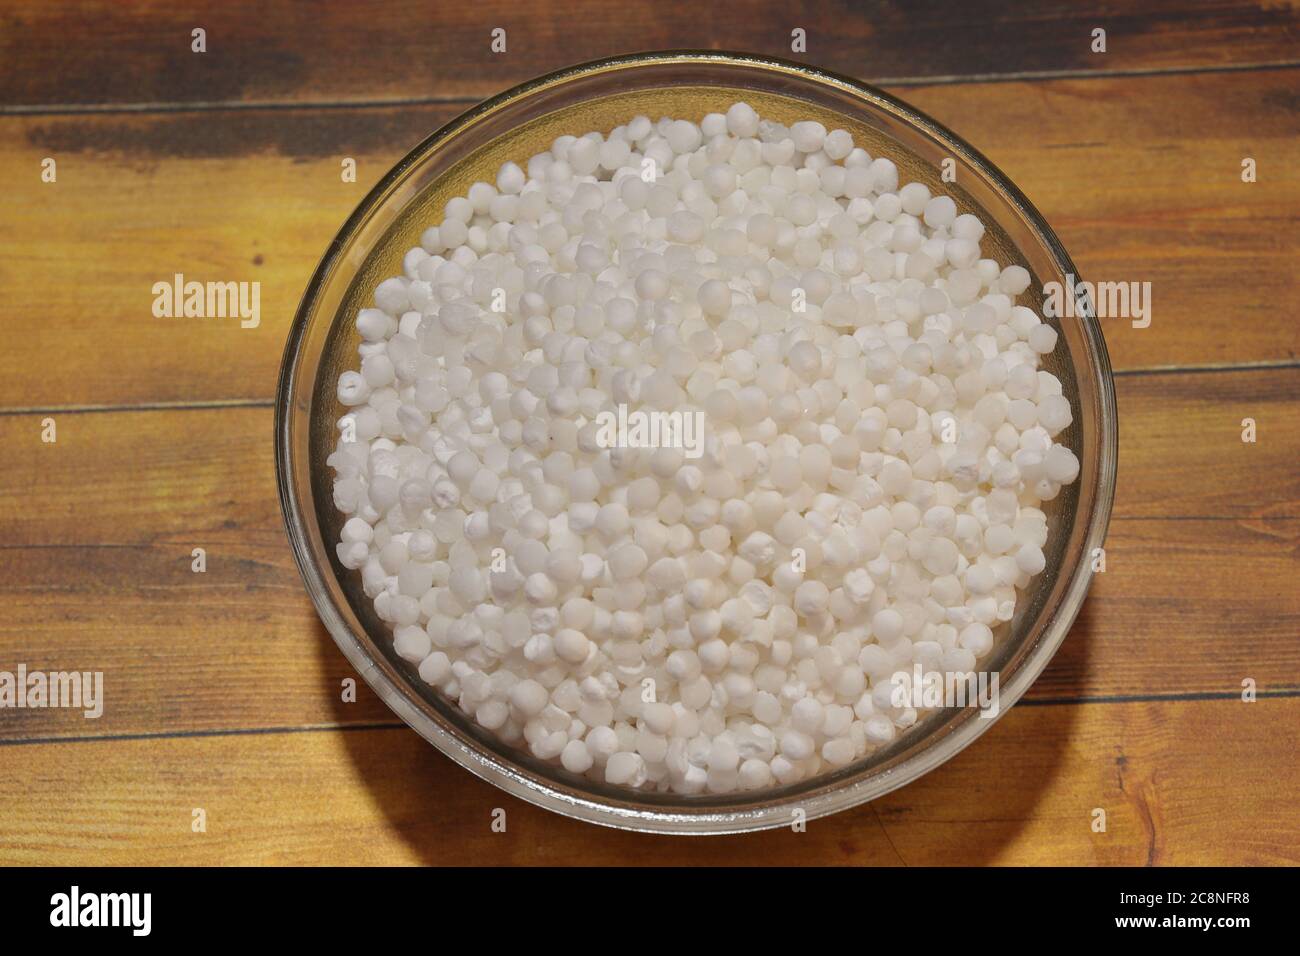 Weiße Sago-Perlen oder Sabudana rohe gesunde Sago-Kugeln in Holzschale  isoliert Stockfotografie - Alamy